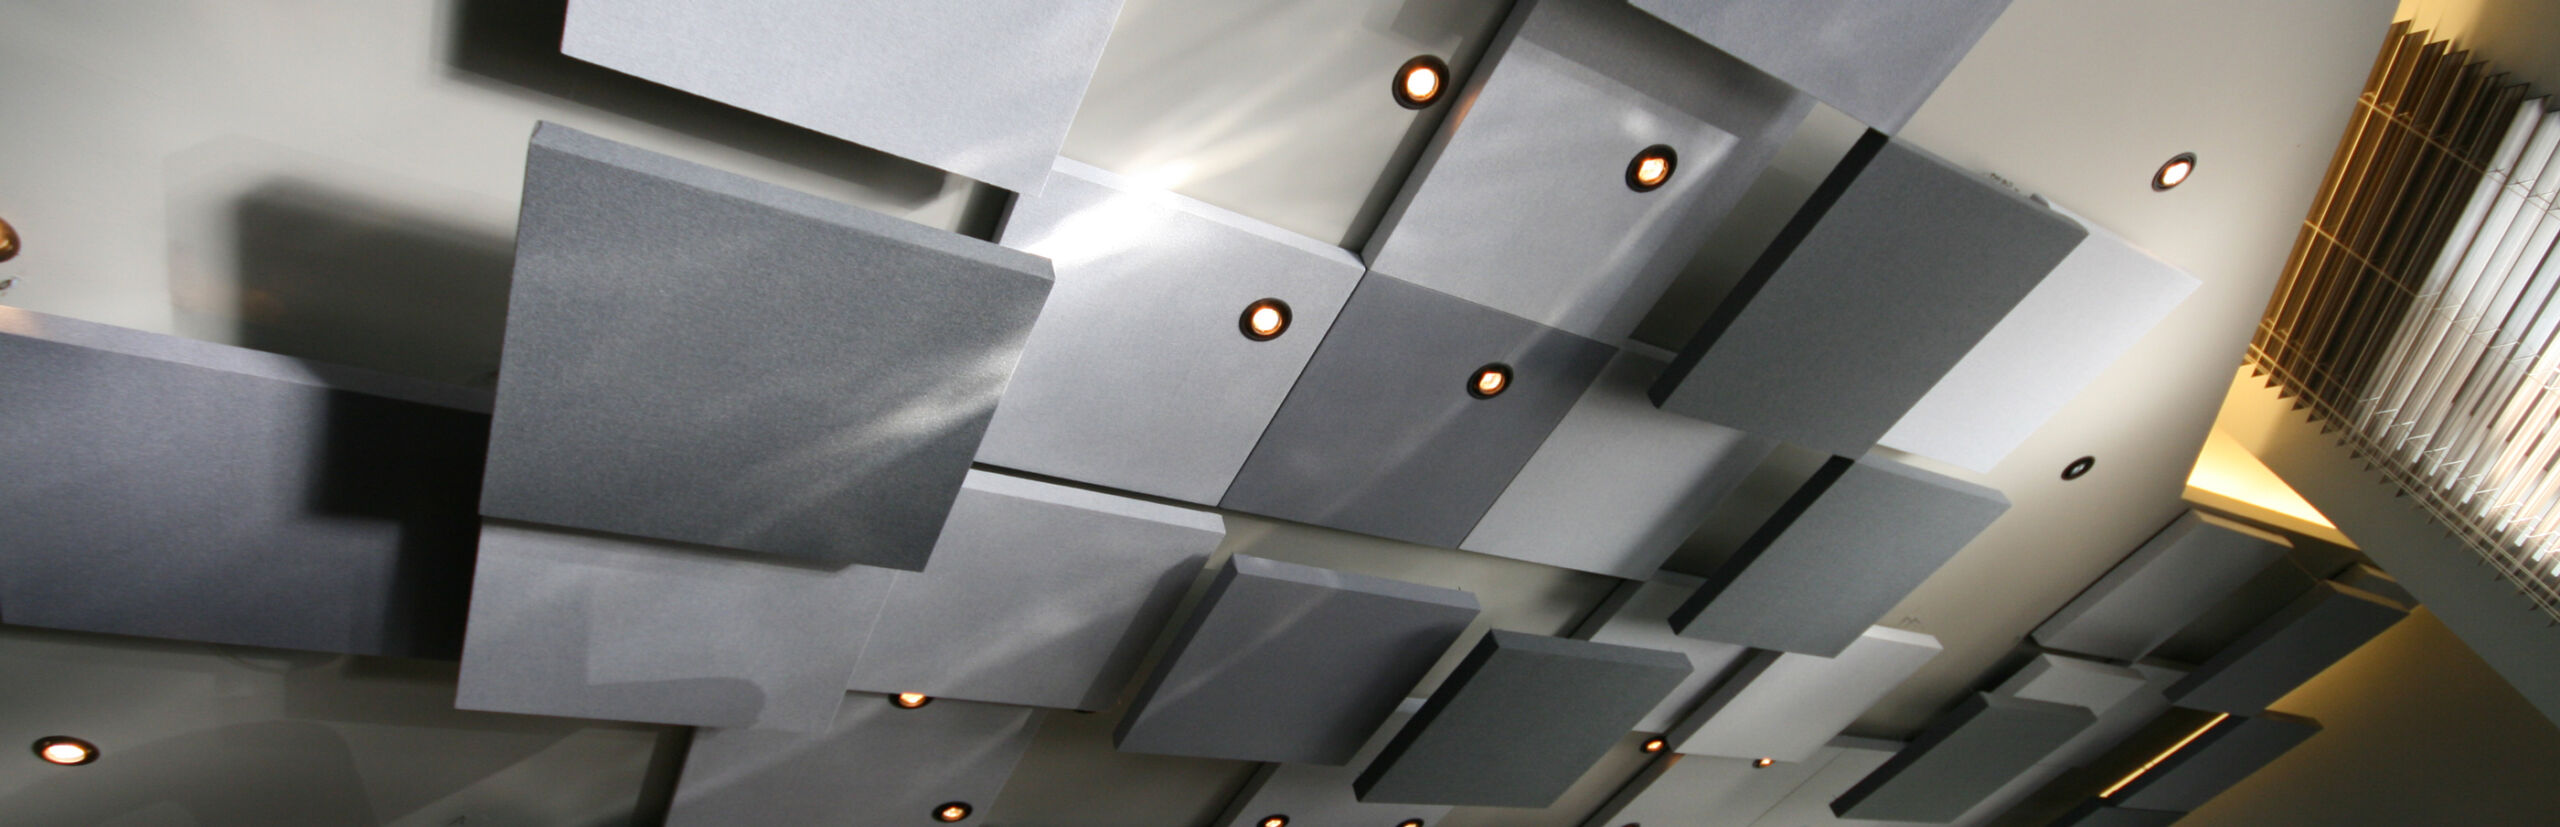 Panneaux absorbants acoustiques avec luminaires intégrés